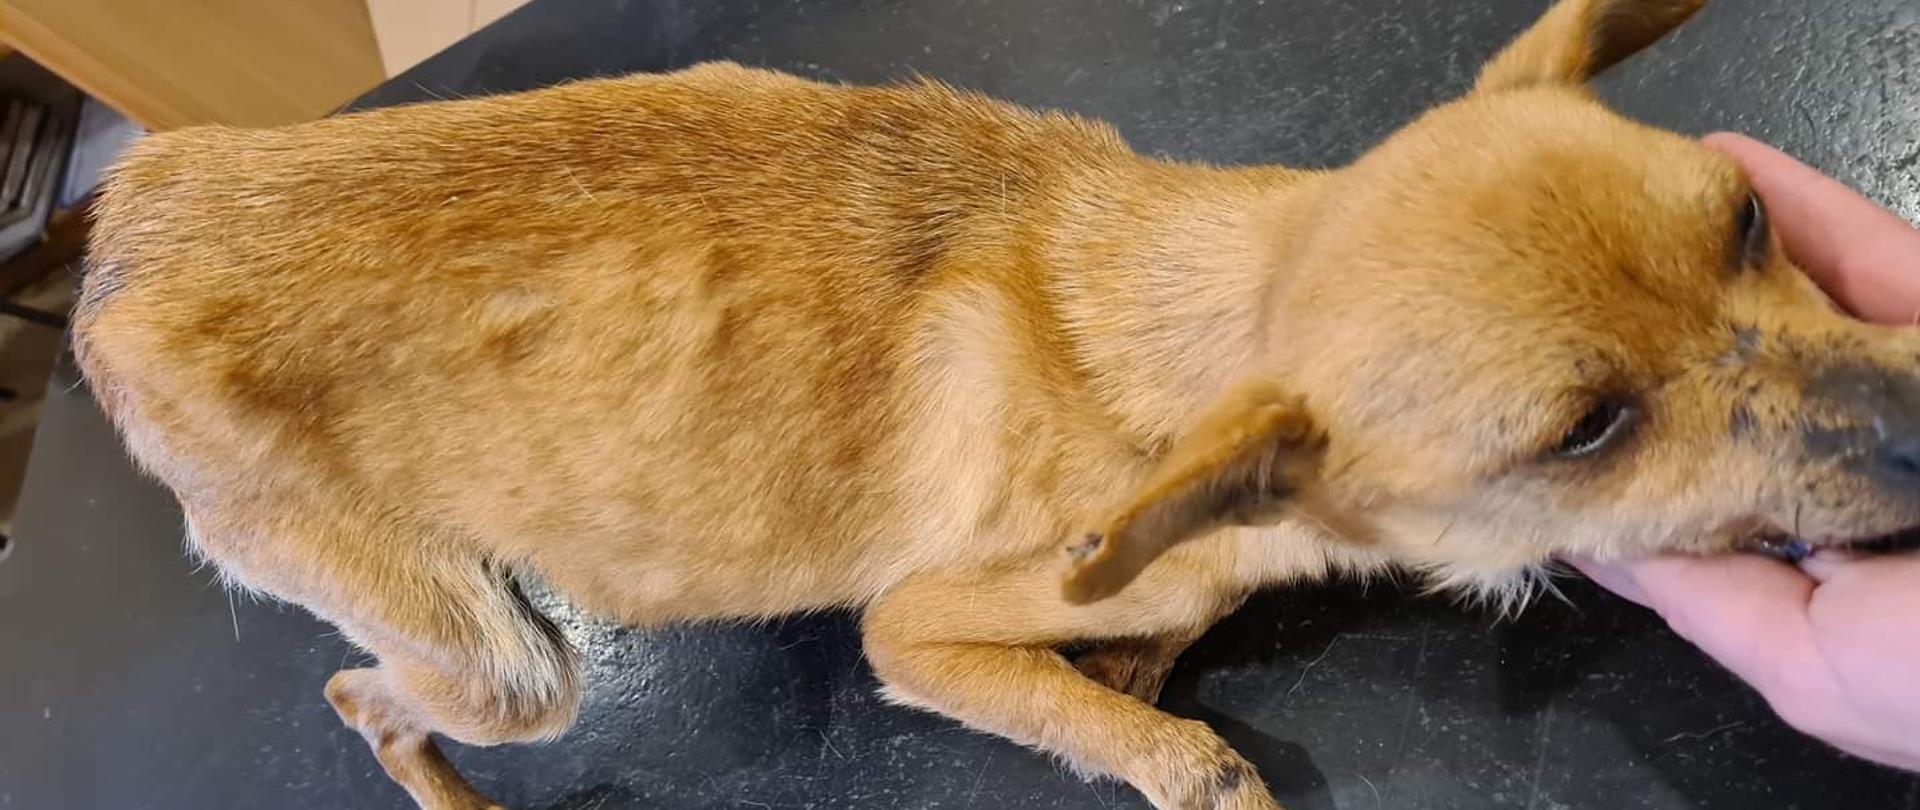 Zdjęcie przedstawia psa - sukę odłowioną 15.03.2021 r. w miejscowości Knurowiec. Pies jest umaszczenia biszkoptowego, waży około 3,5 kg, nie posiada obroży